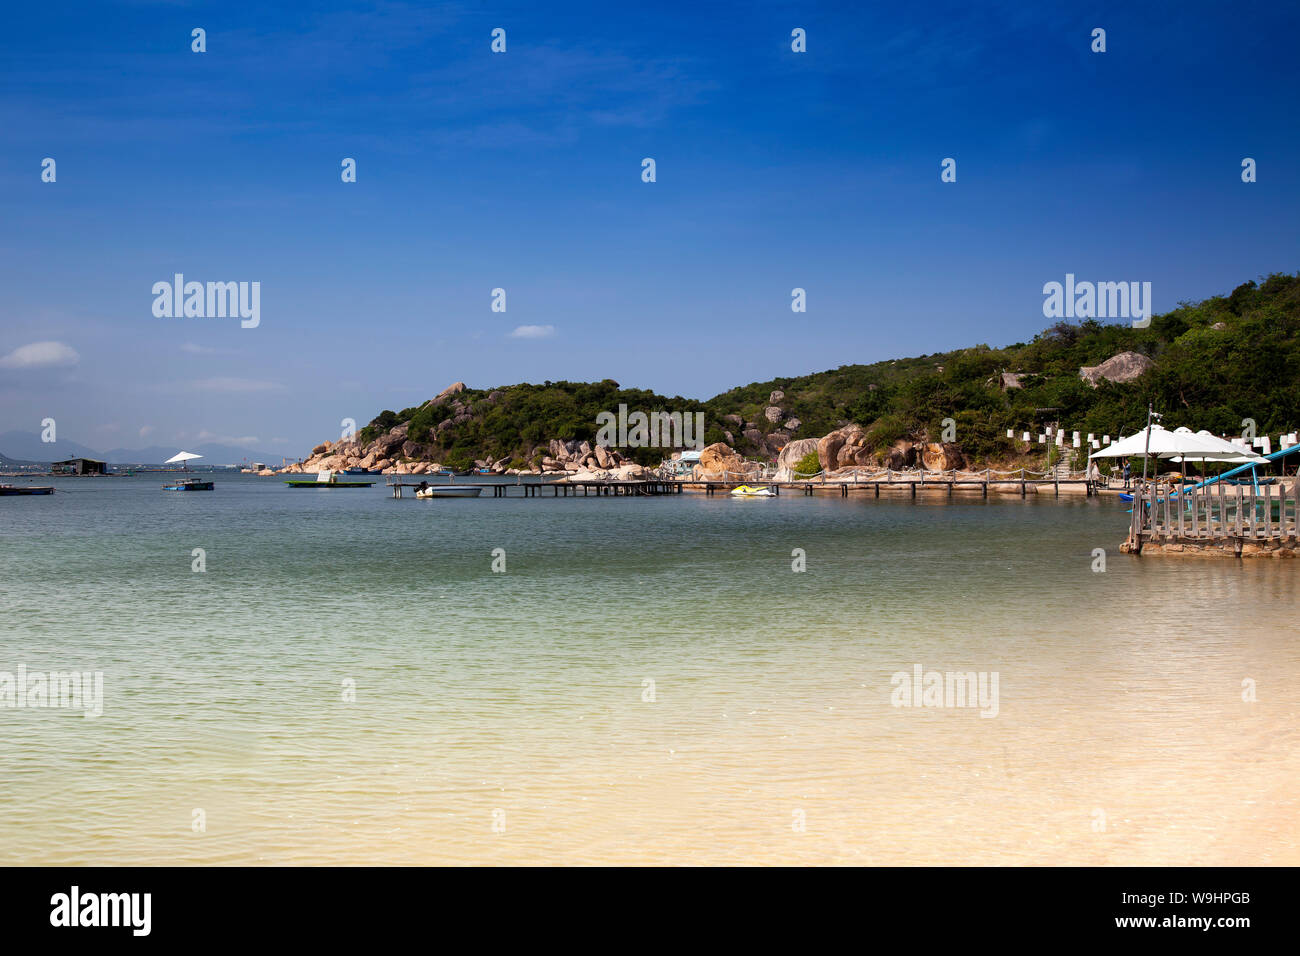 La spiaggia e il resort di Sao Bien nella baia di Cam Ranh,sul mare del sud della Cina, Ninh Thuan, Vietnam, Asia, 30074599 Foto Stock